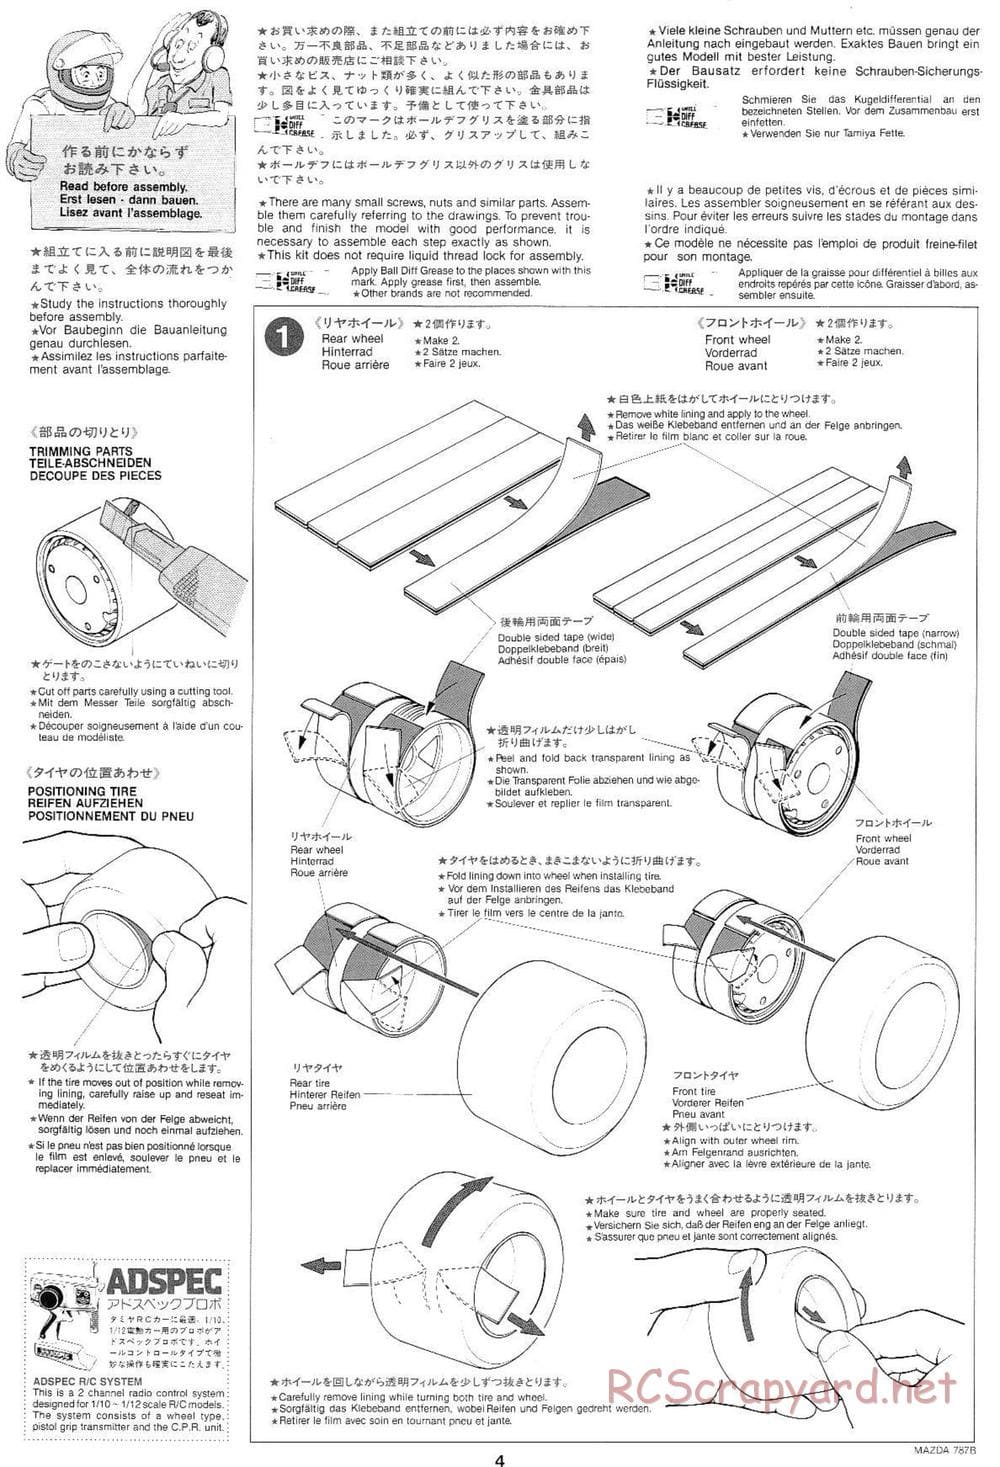 Tamiya - Mazda 787B - Group-C Chassis - Manual - Page 4